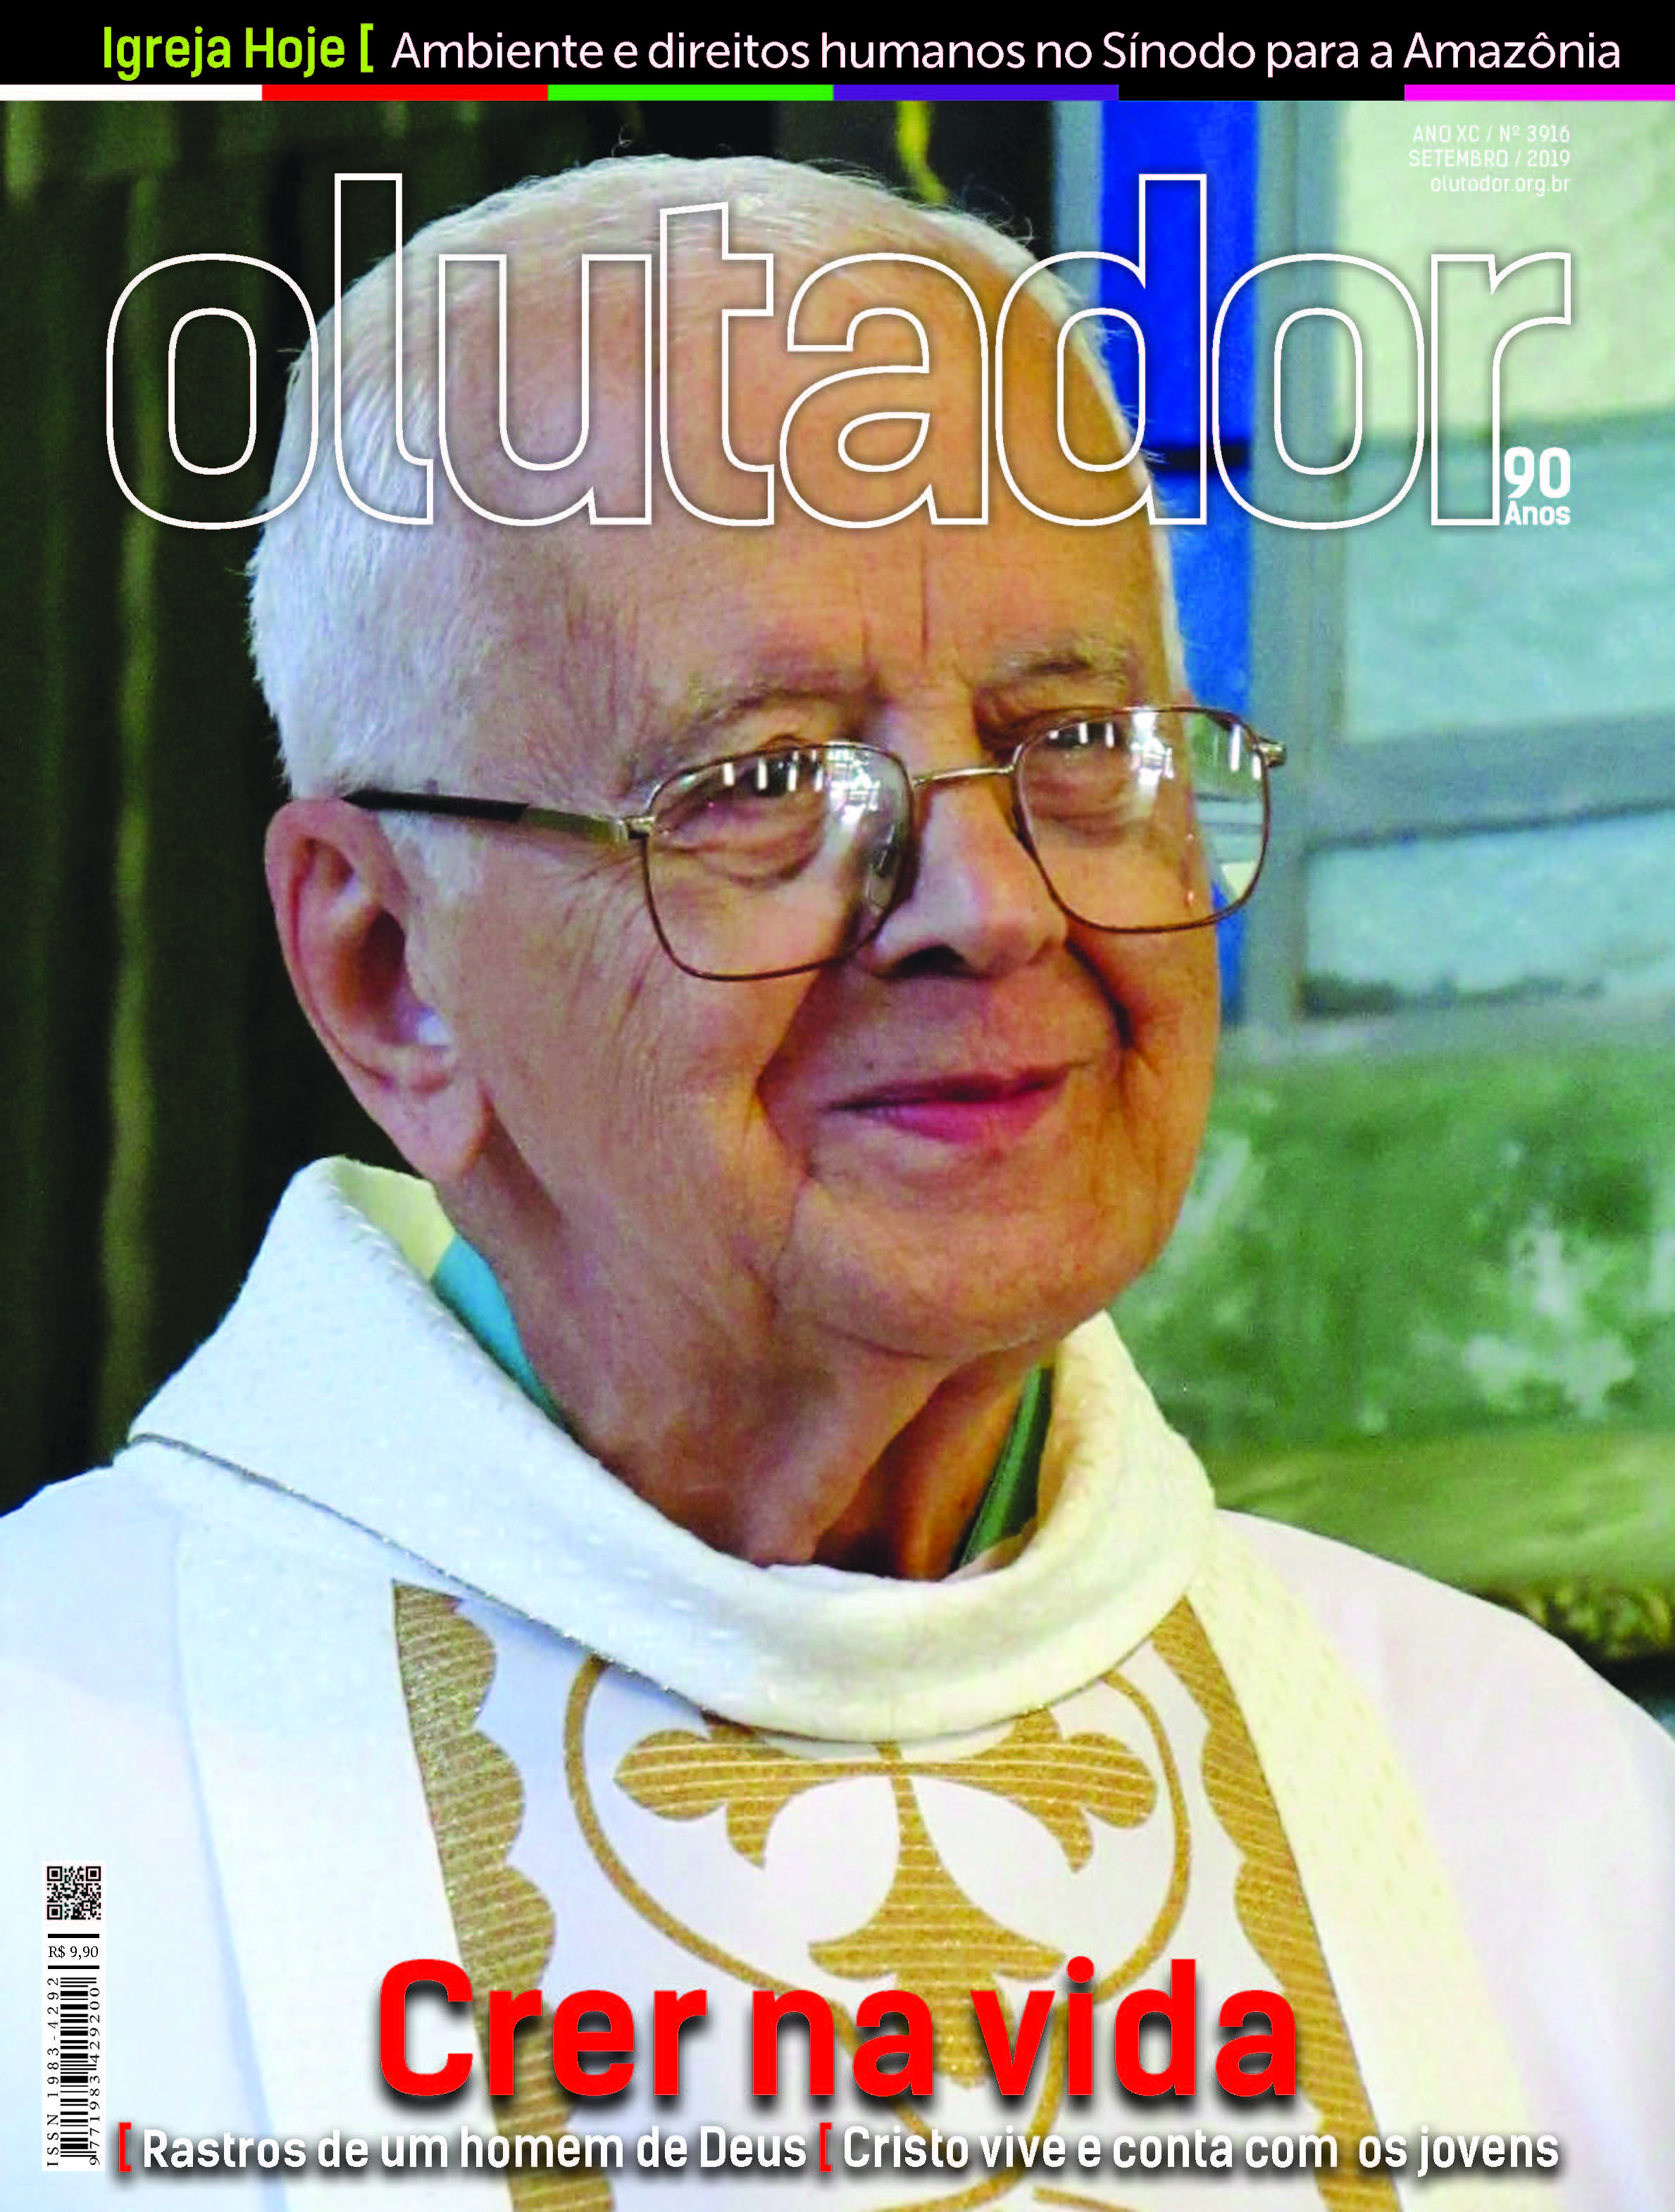 Pe. Demerval Alves Botelho, SDN, Missionário Sacramentino